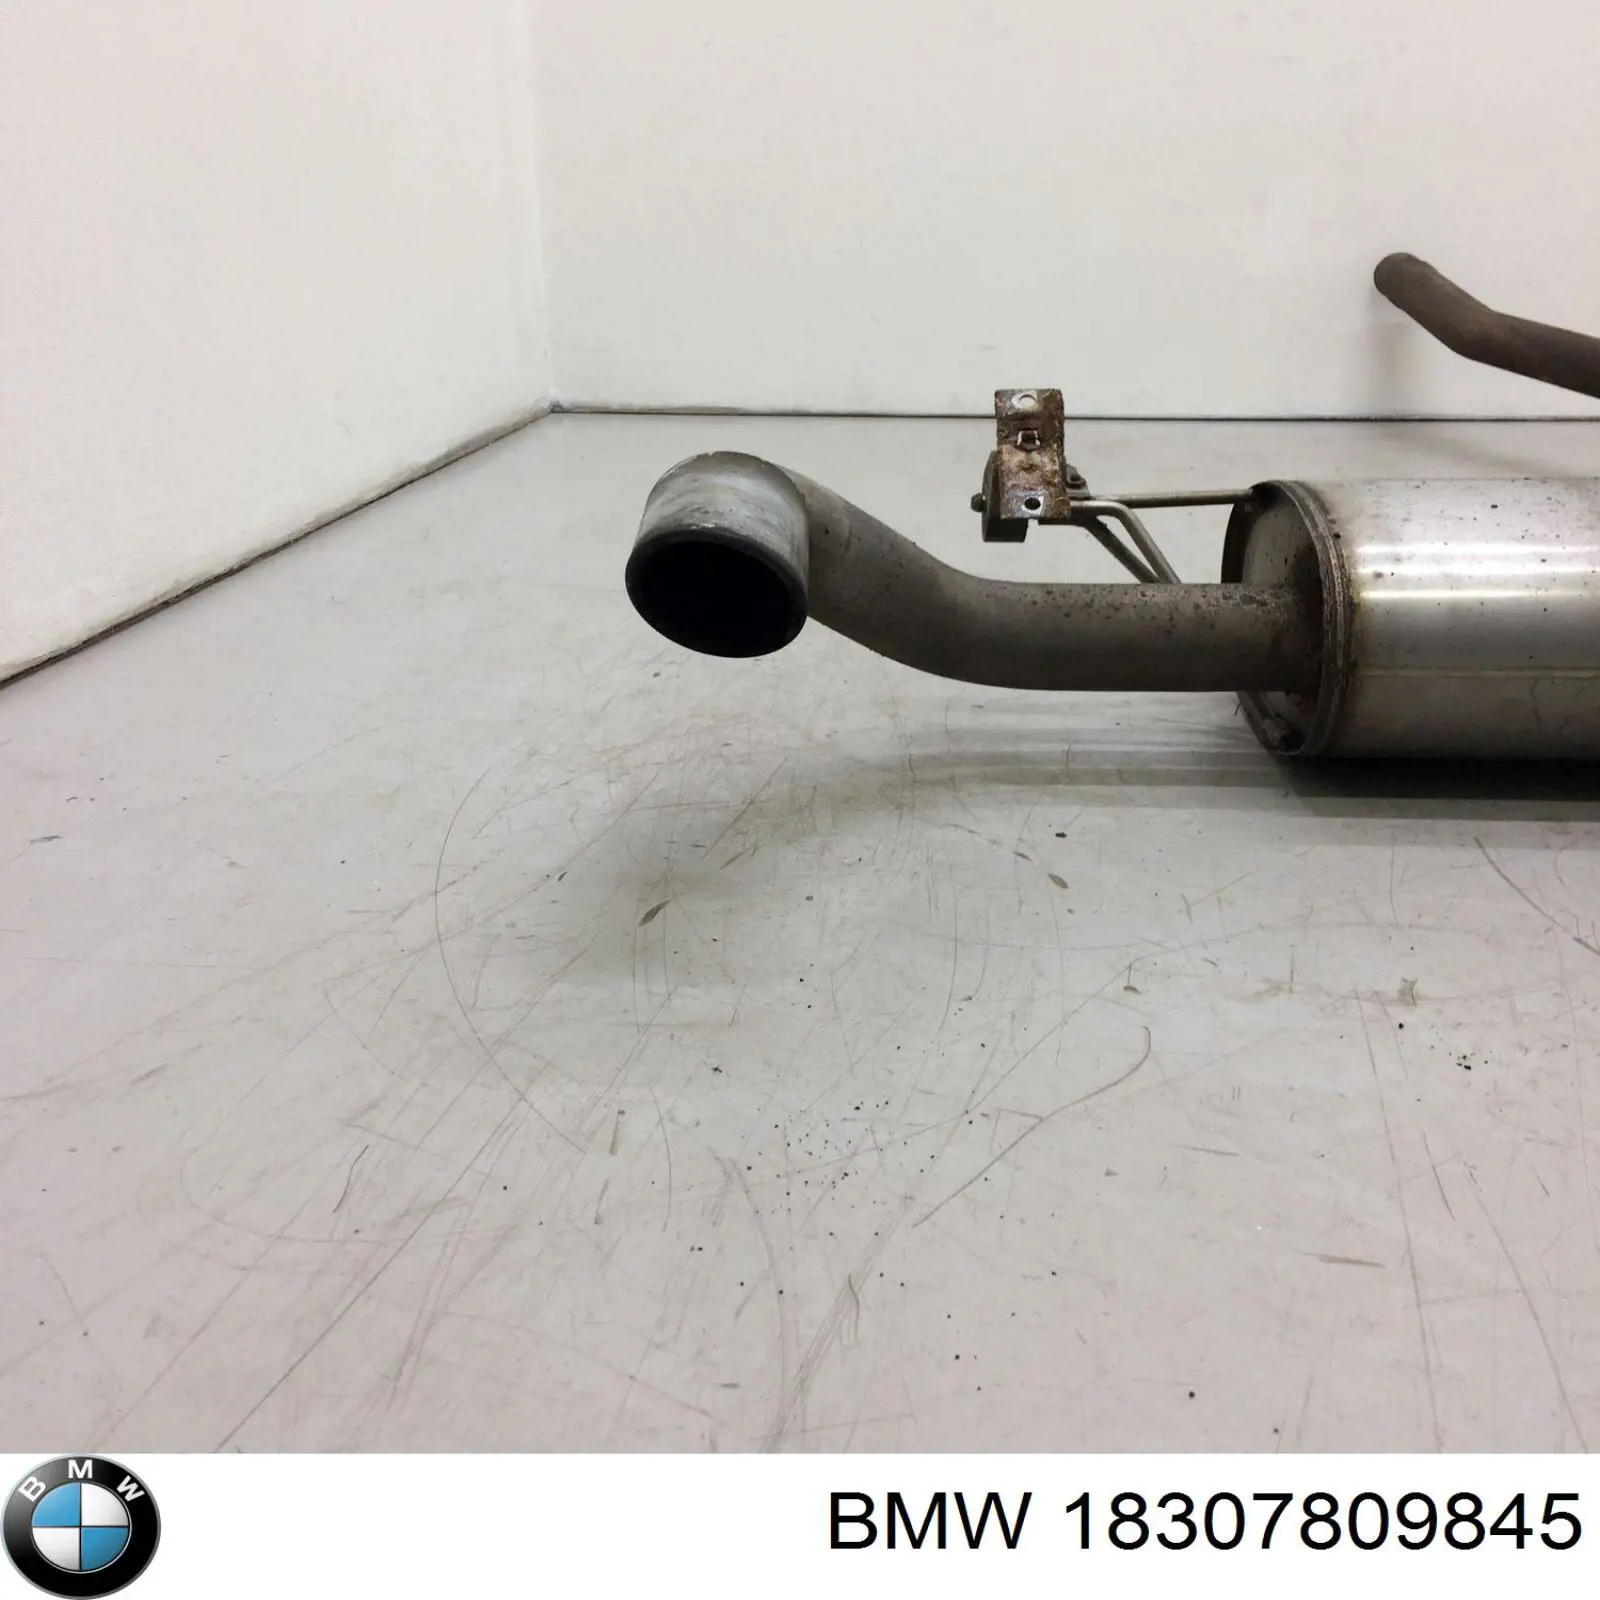 18307801118 BMW silenciador posterior